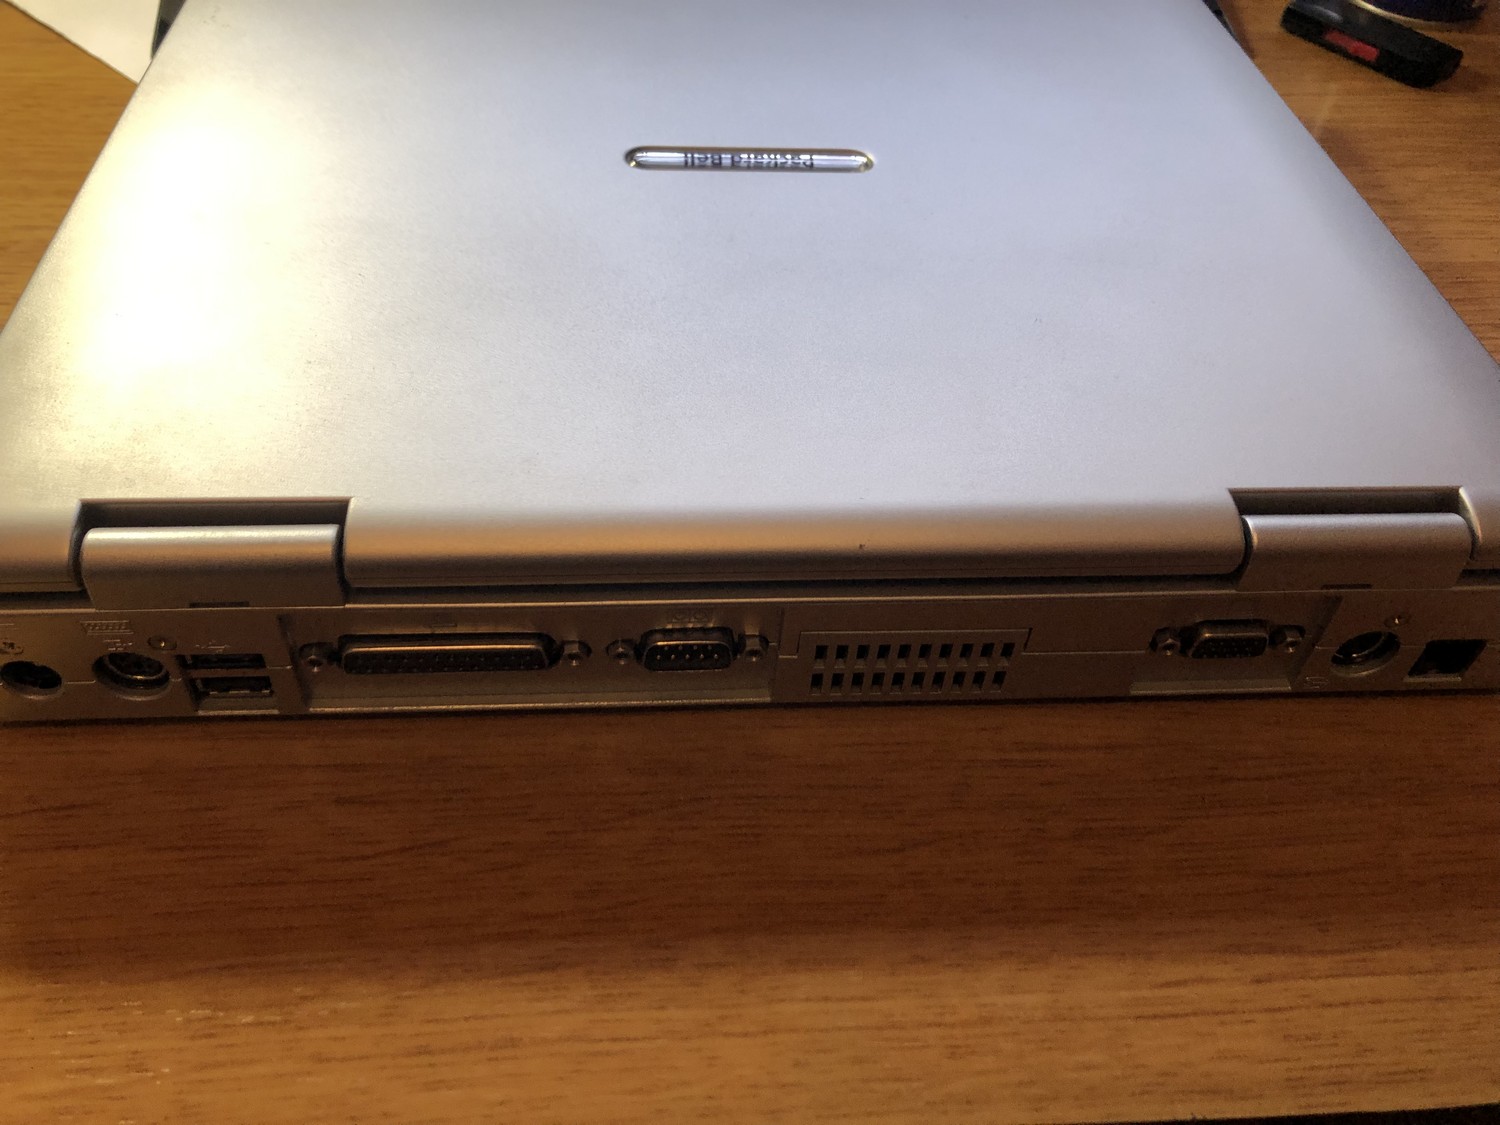 Гаджеты с барахолки: зачем покупать 20-летний ноутбук Packard Bell за 10 евро - 5